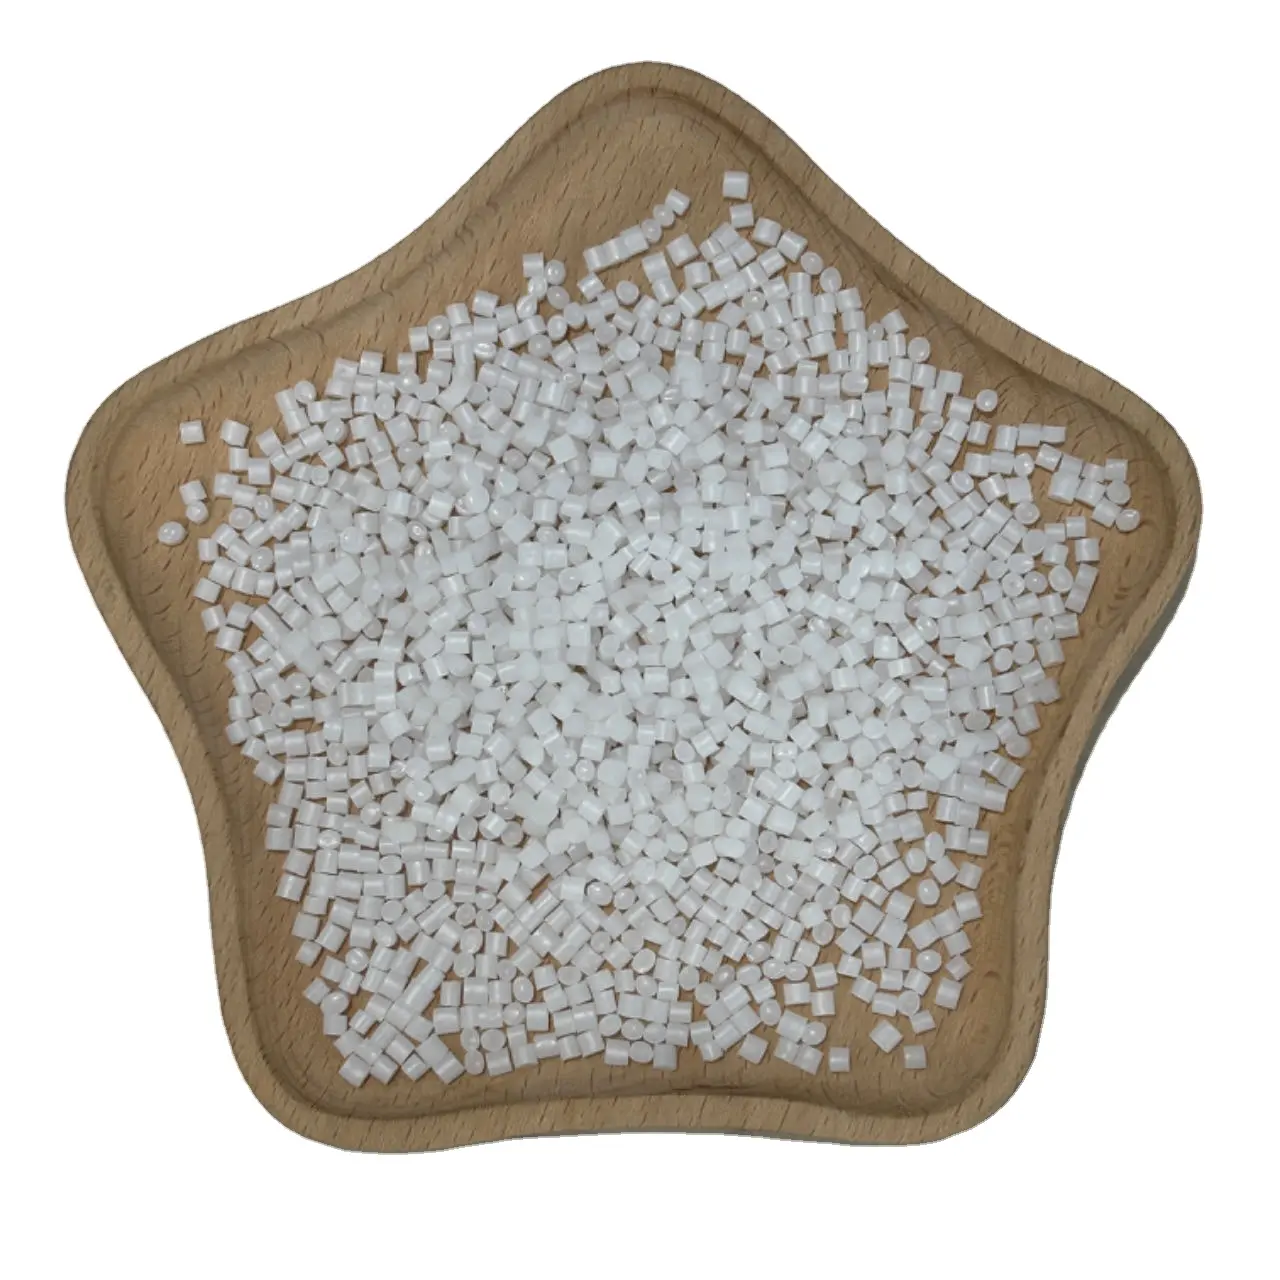 Hanches 825 granules de polystyrène à impact élevé hanches granules de plastique matière première plastique matière plastique fournisseurs clairs